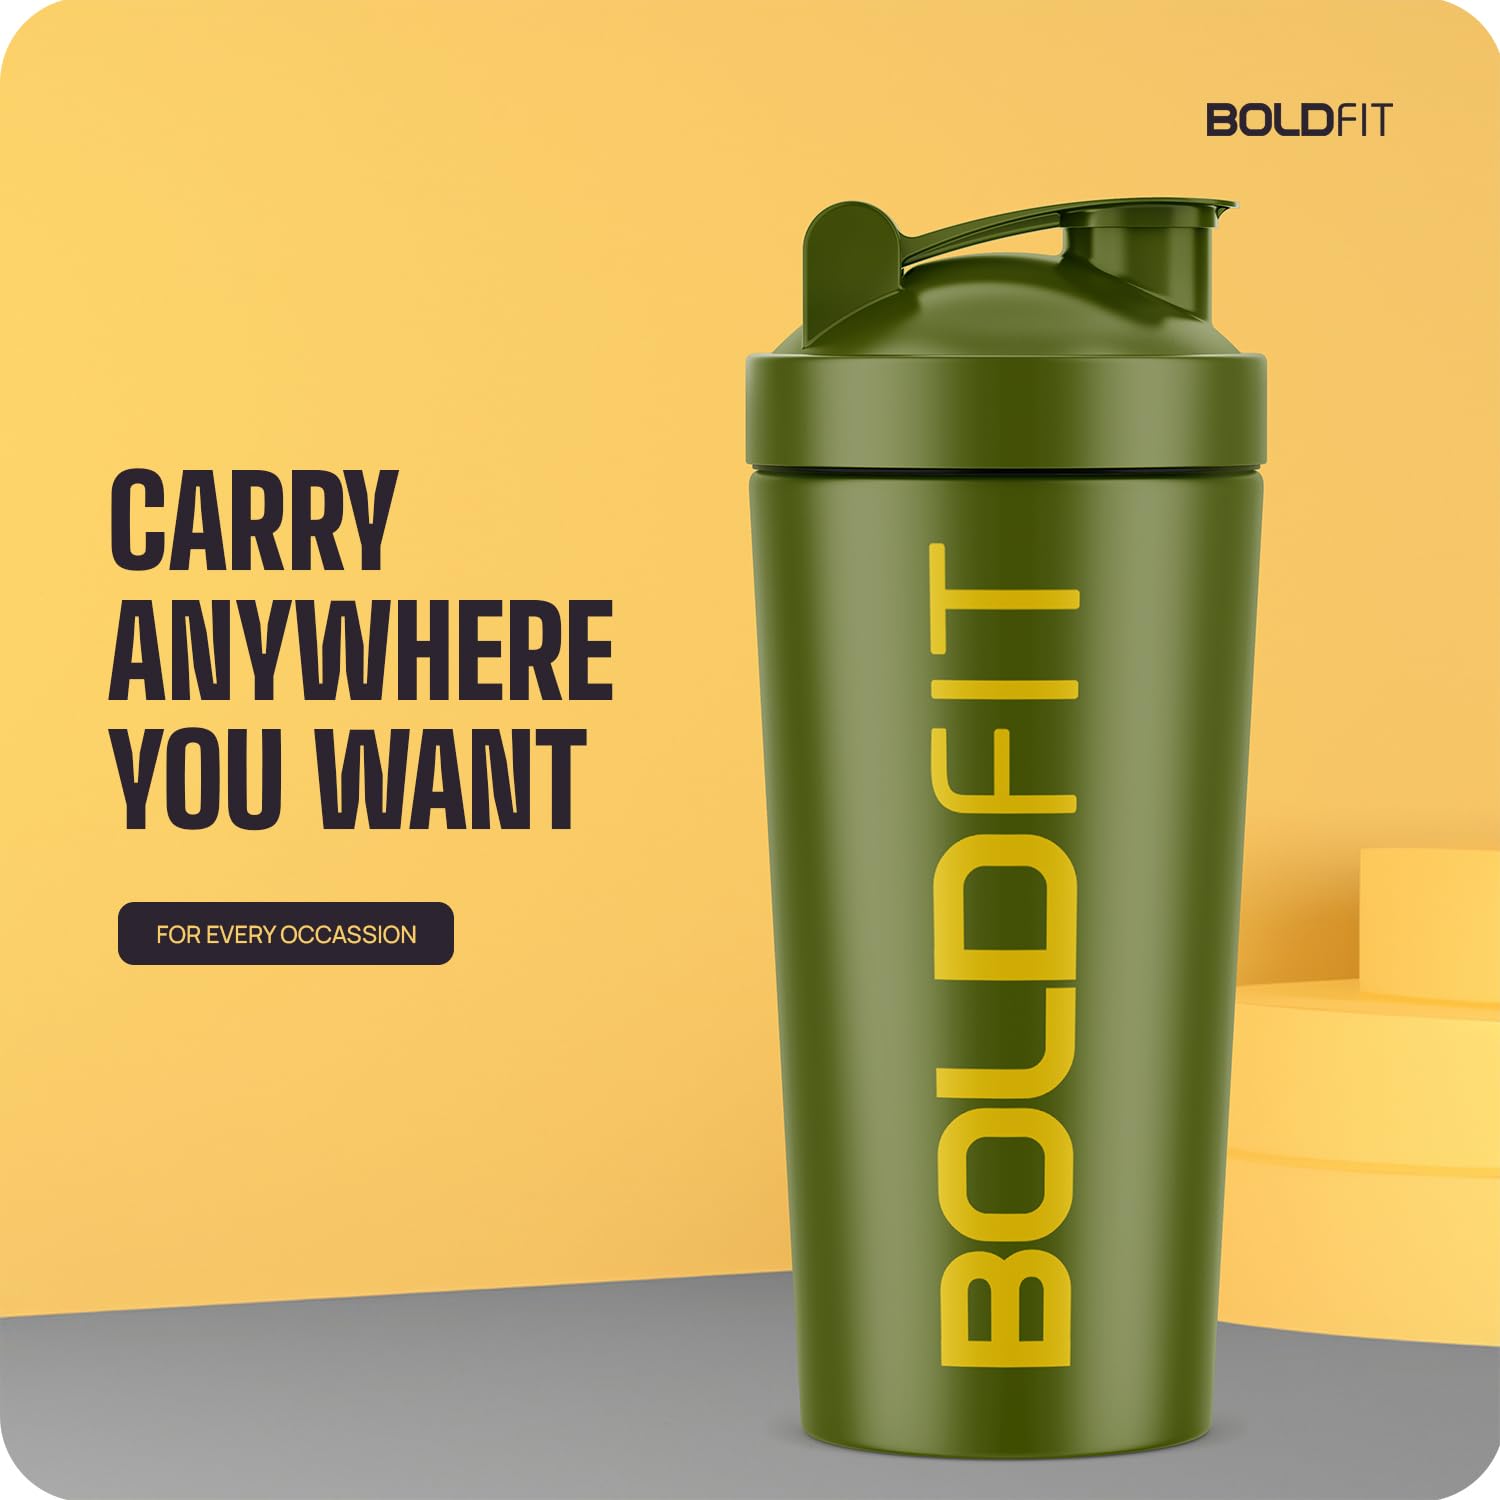  Boldfit Bold Gym Shaker Bottle 700ml, Shaker Bottles